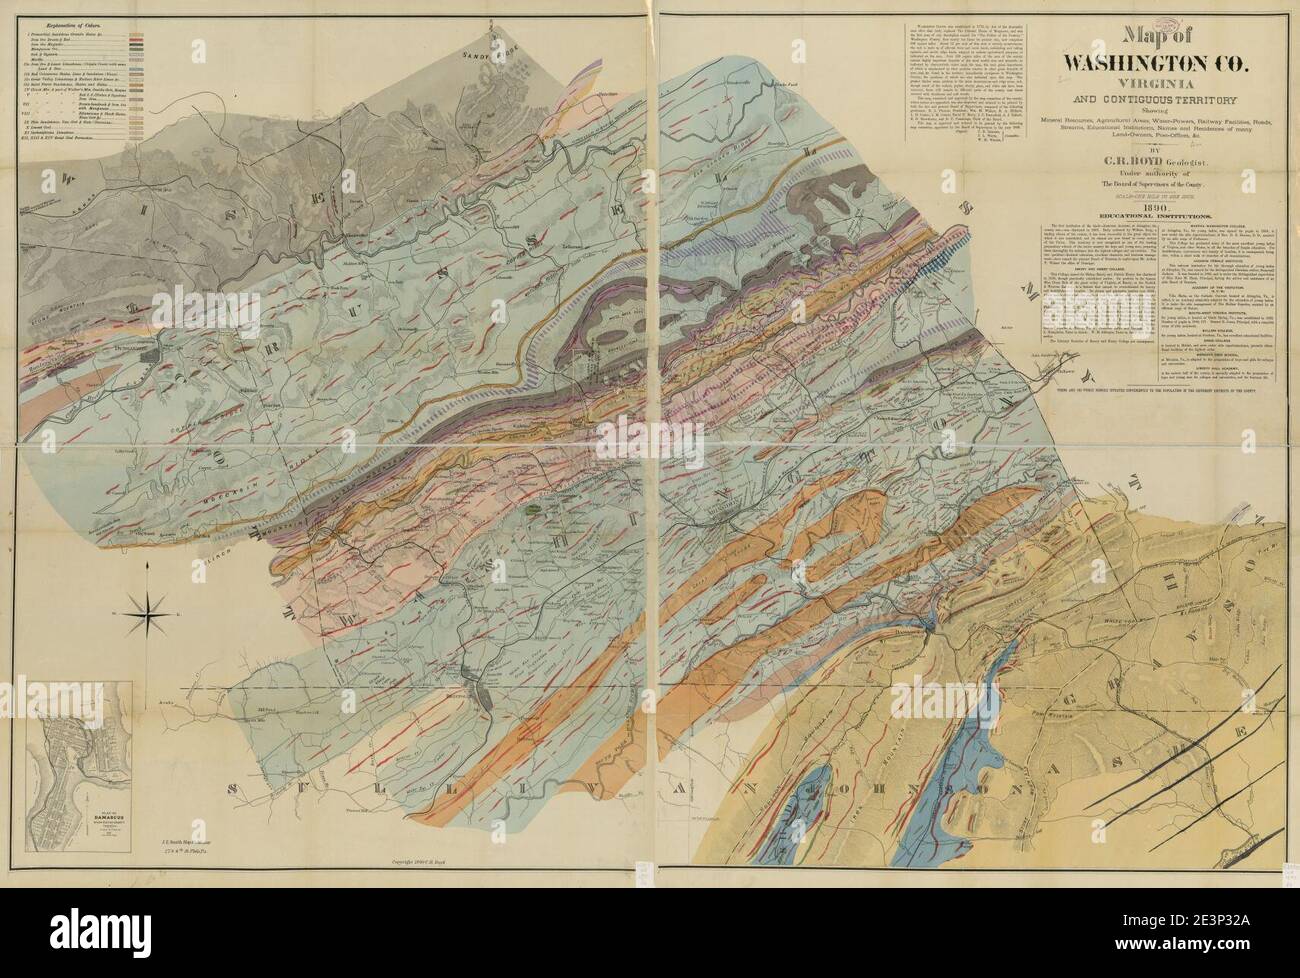 Mappa di Washington Co., Virginia e territorio contiguo - che mostra risorse minerarie, aree agricole, acqua-potenze, strutture ferroviarie, strade, corsi d'acqua, istituzioni educative, nomi e. Foto Stock